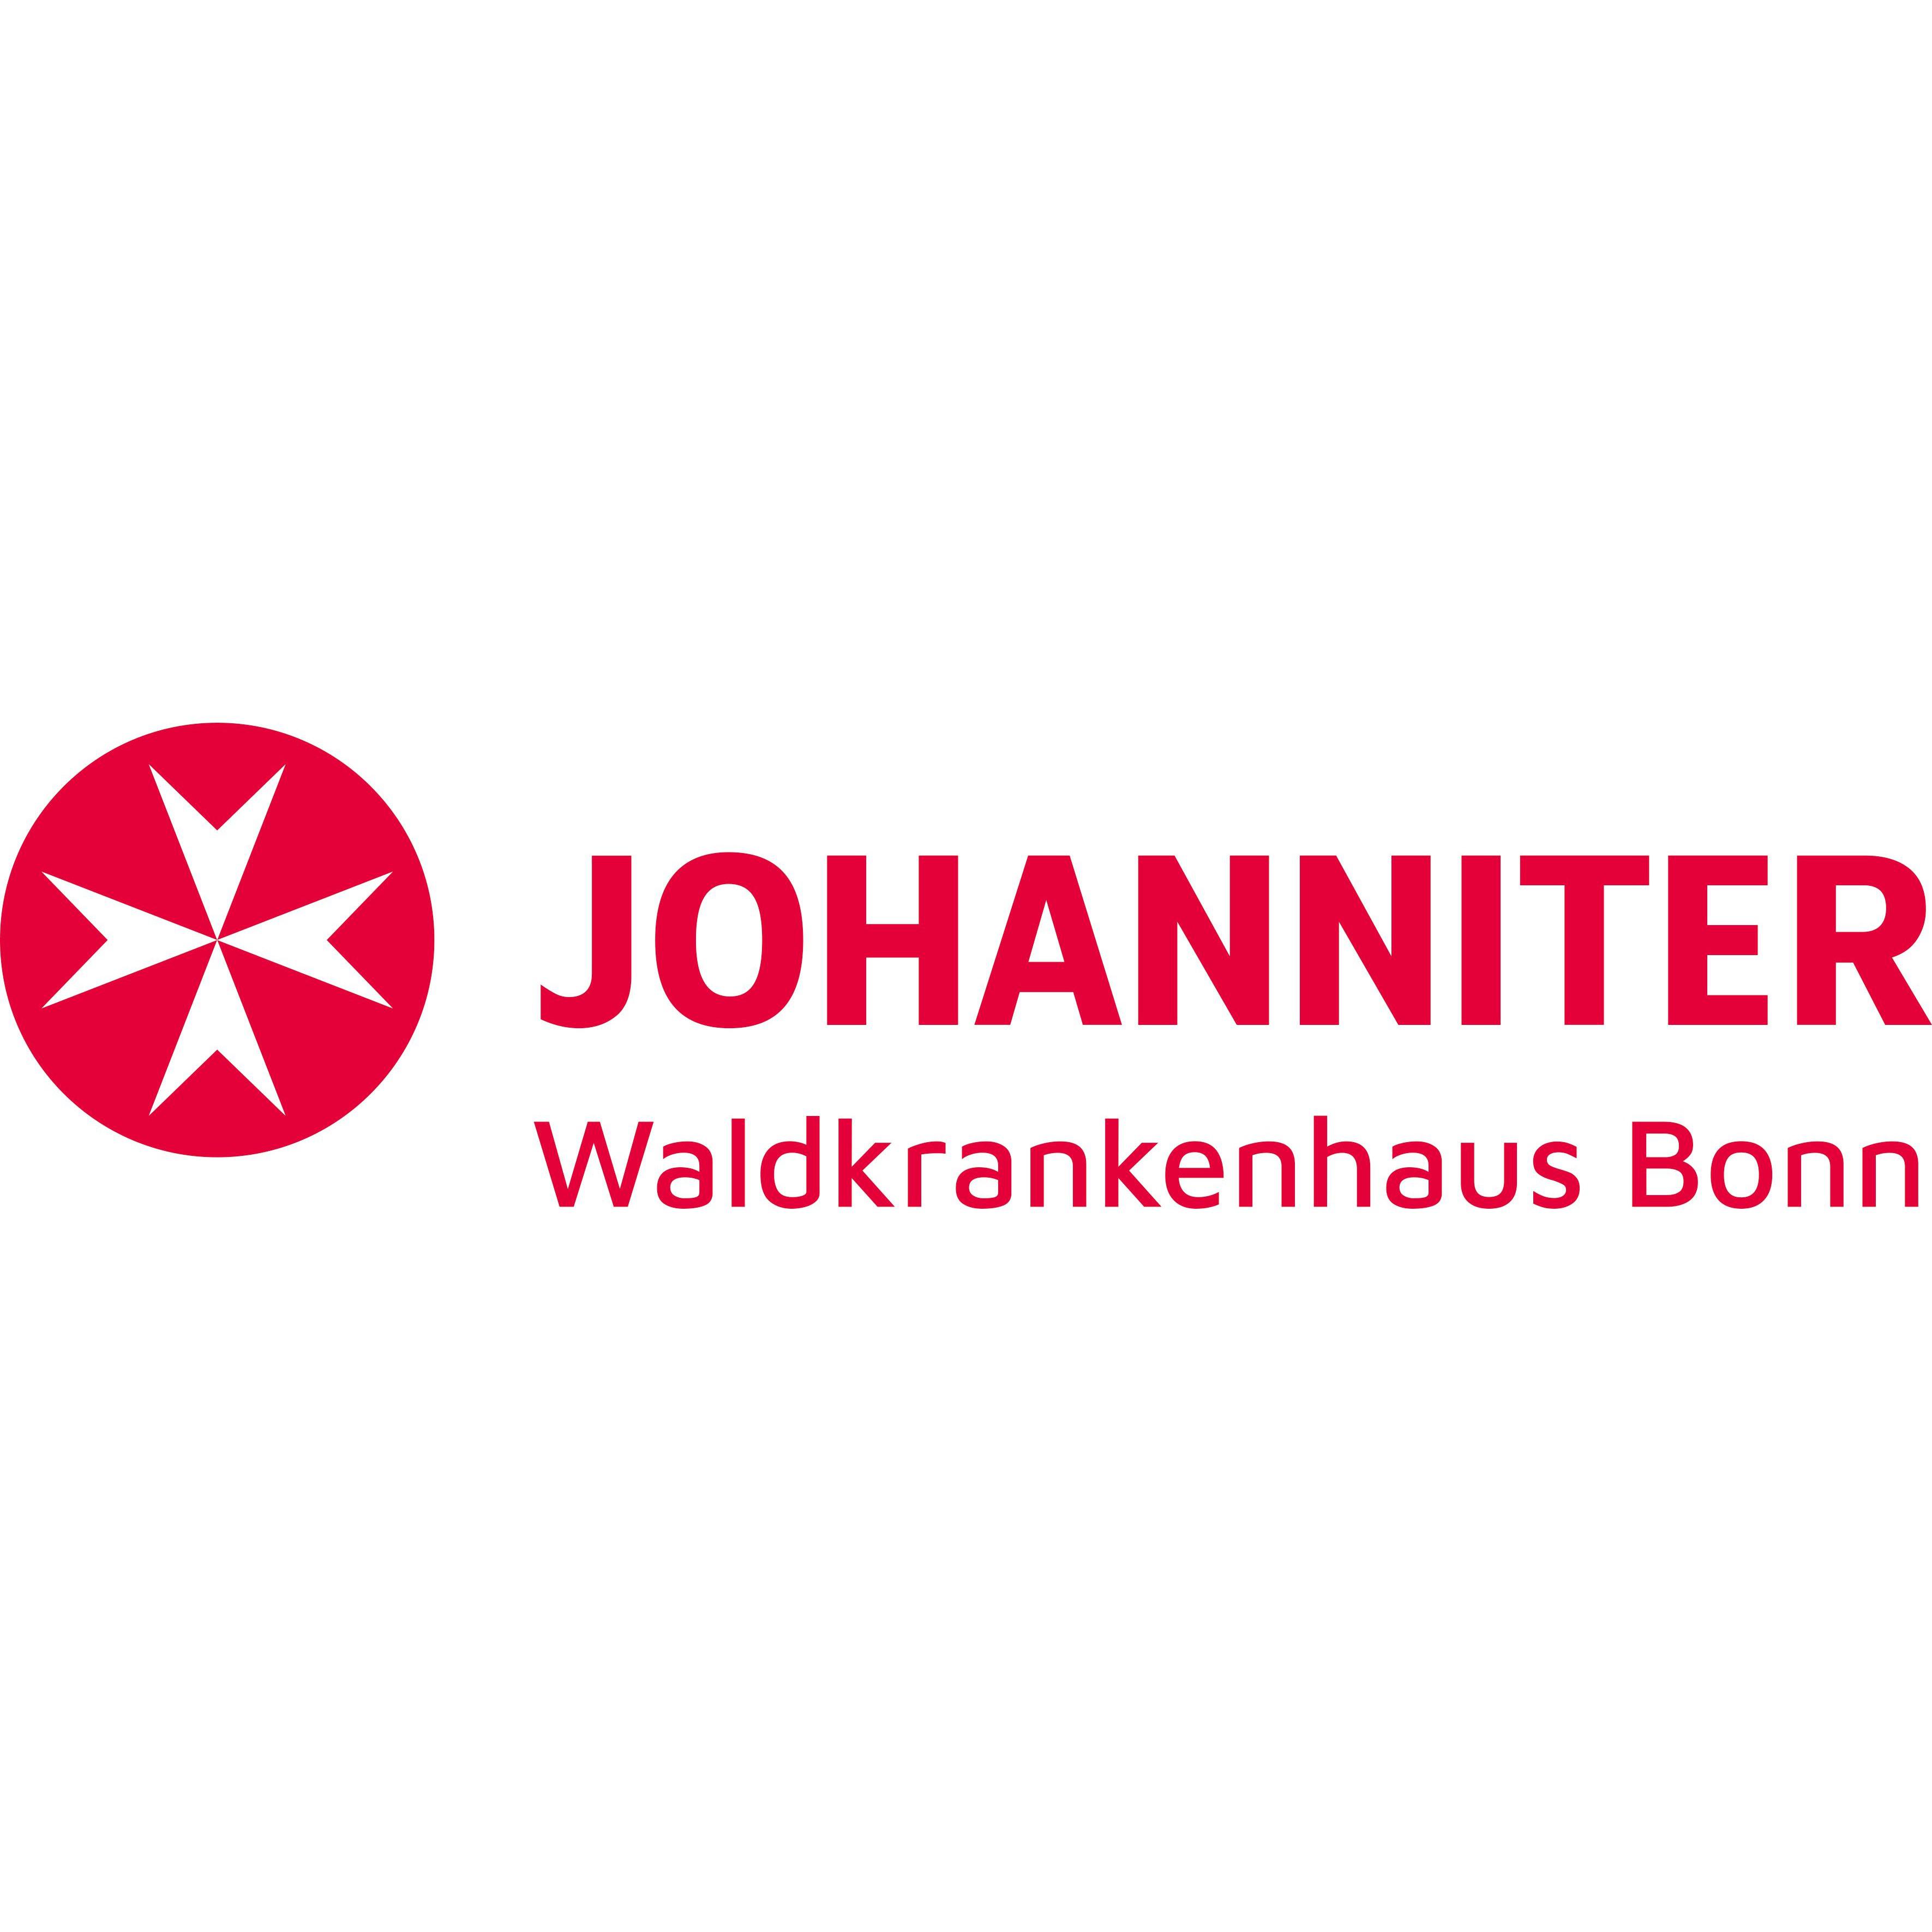 Waldkrankenhaus Bonn in Bonn - Logo